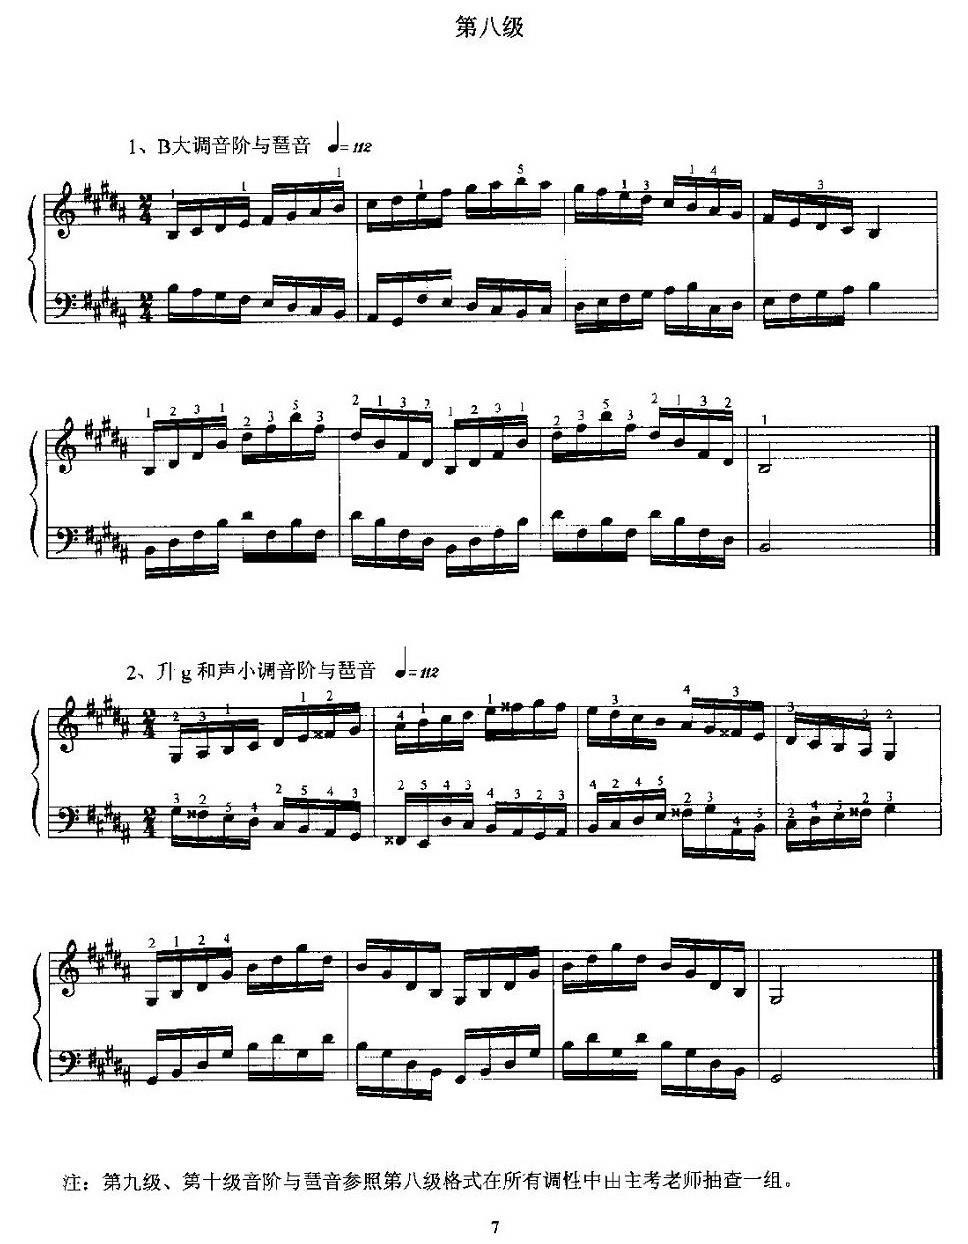 基本技术练习手风琴谱（线简谱对照、带指法版）